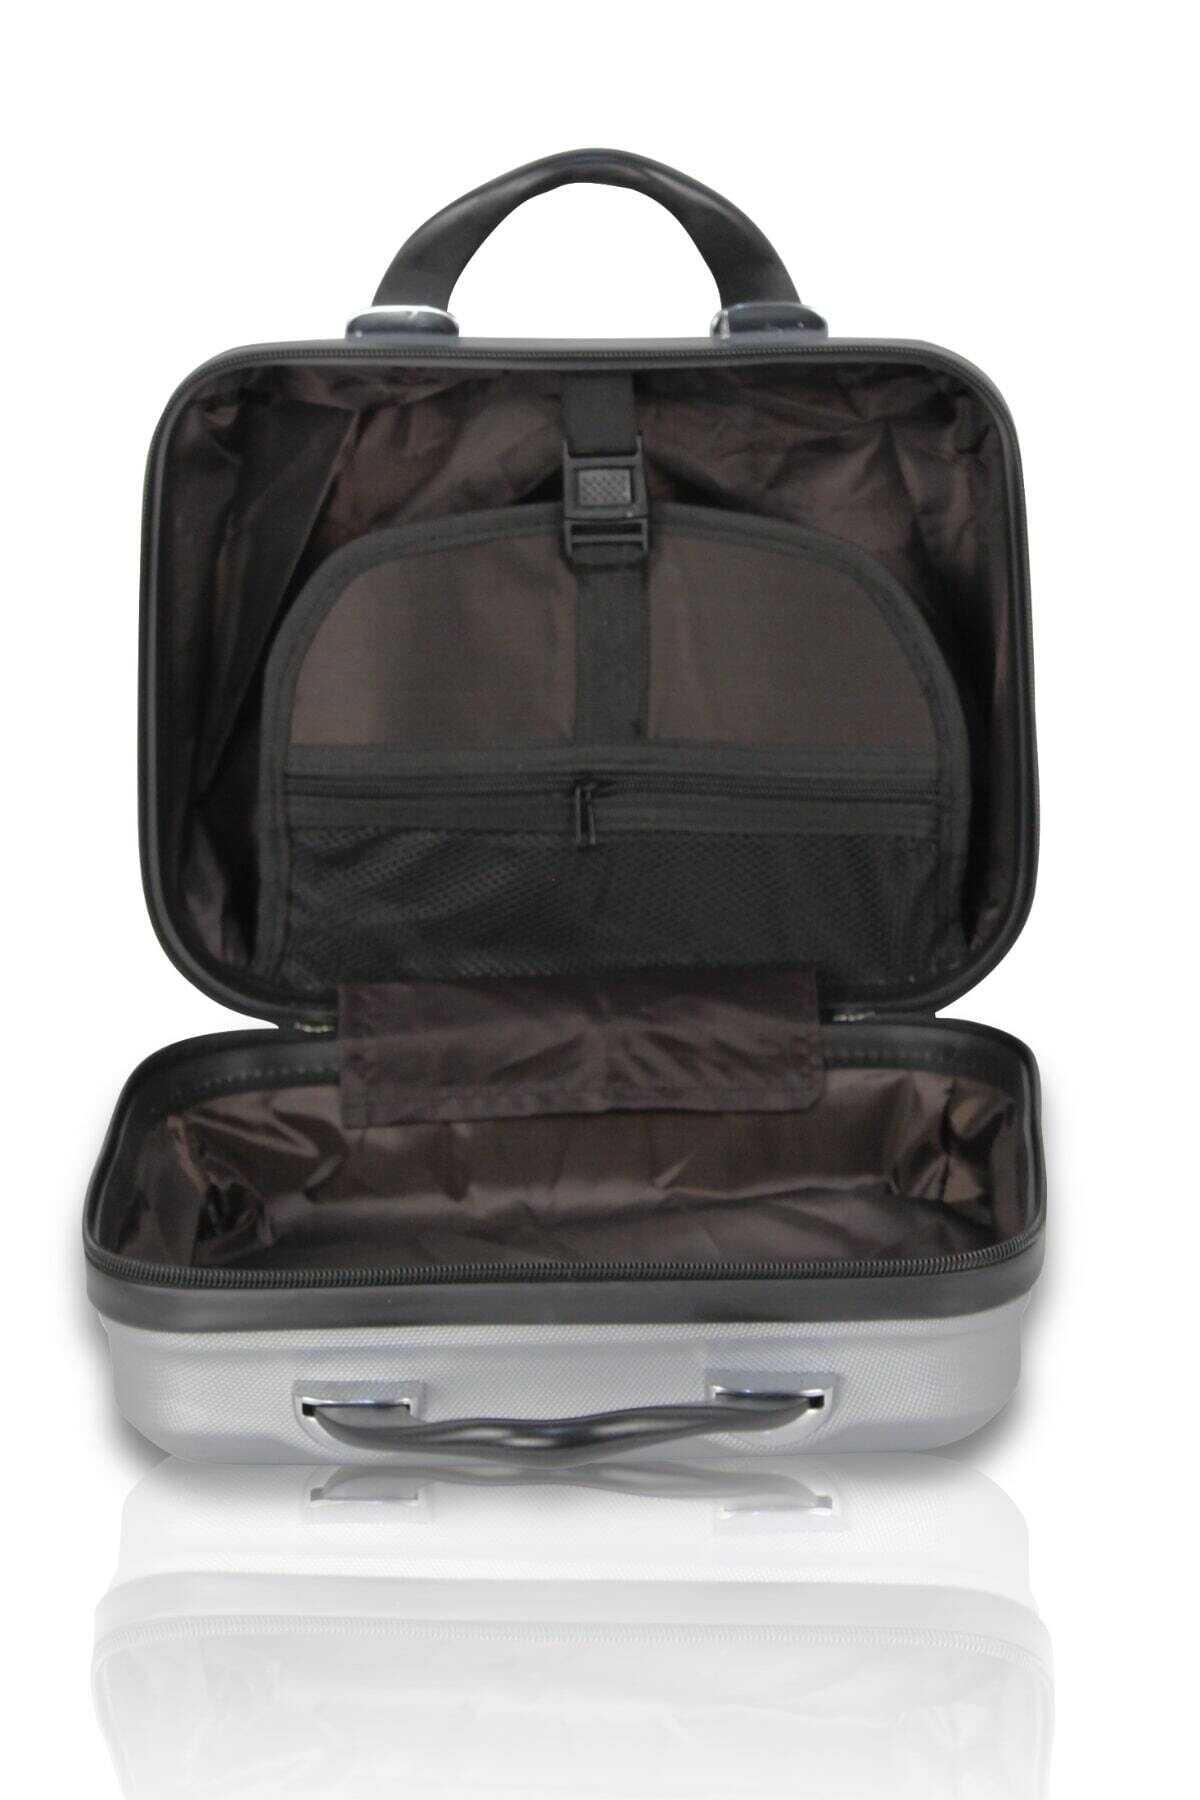 ست 2 عددی چمدان مسافرتی - کیف آرایش یونیسکس مشکی برند My Valice